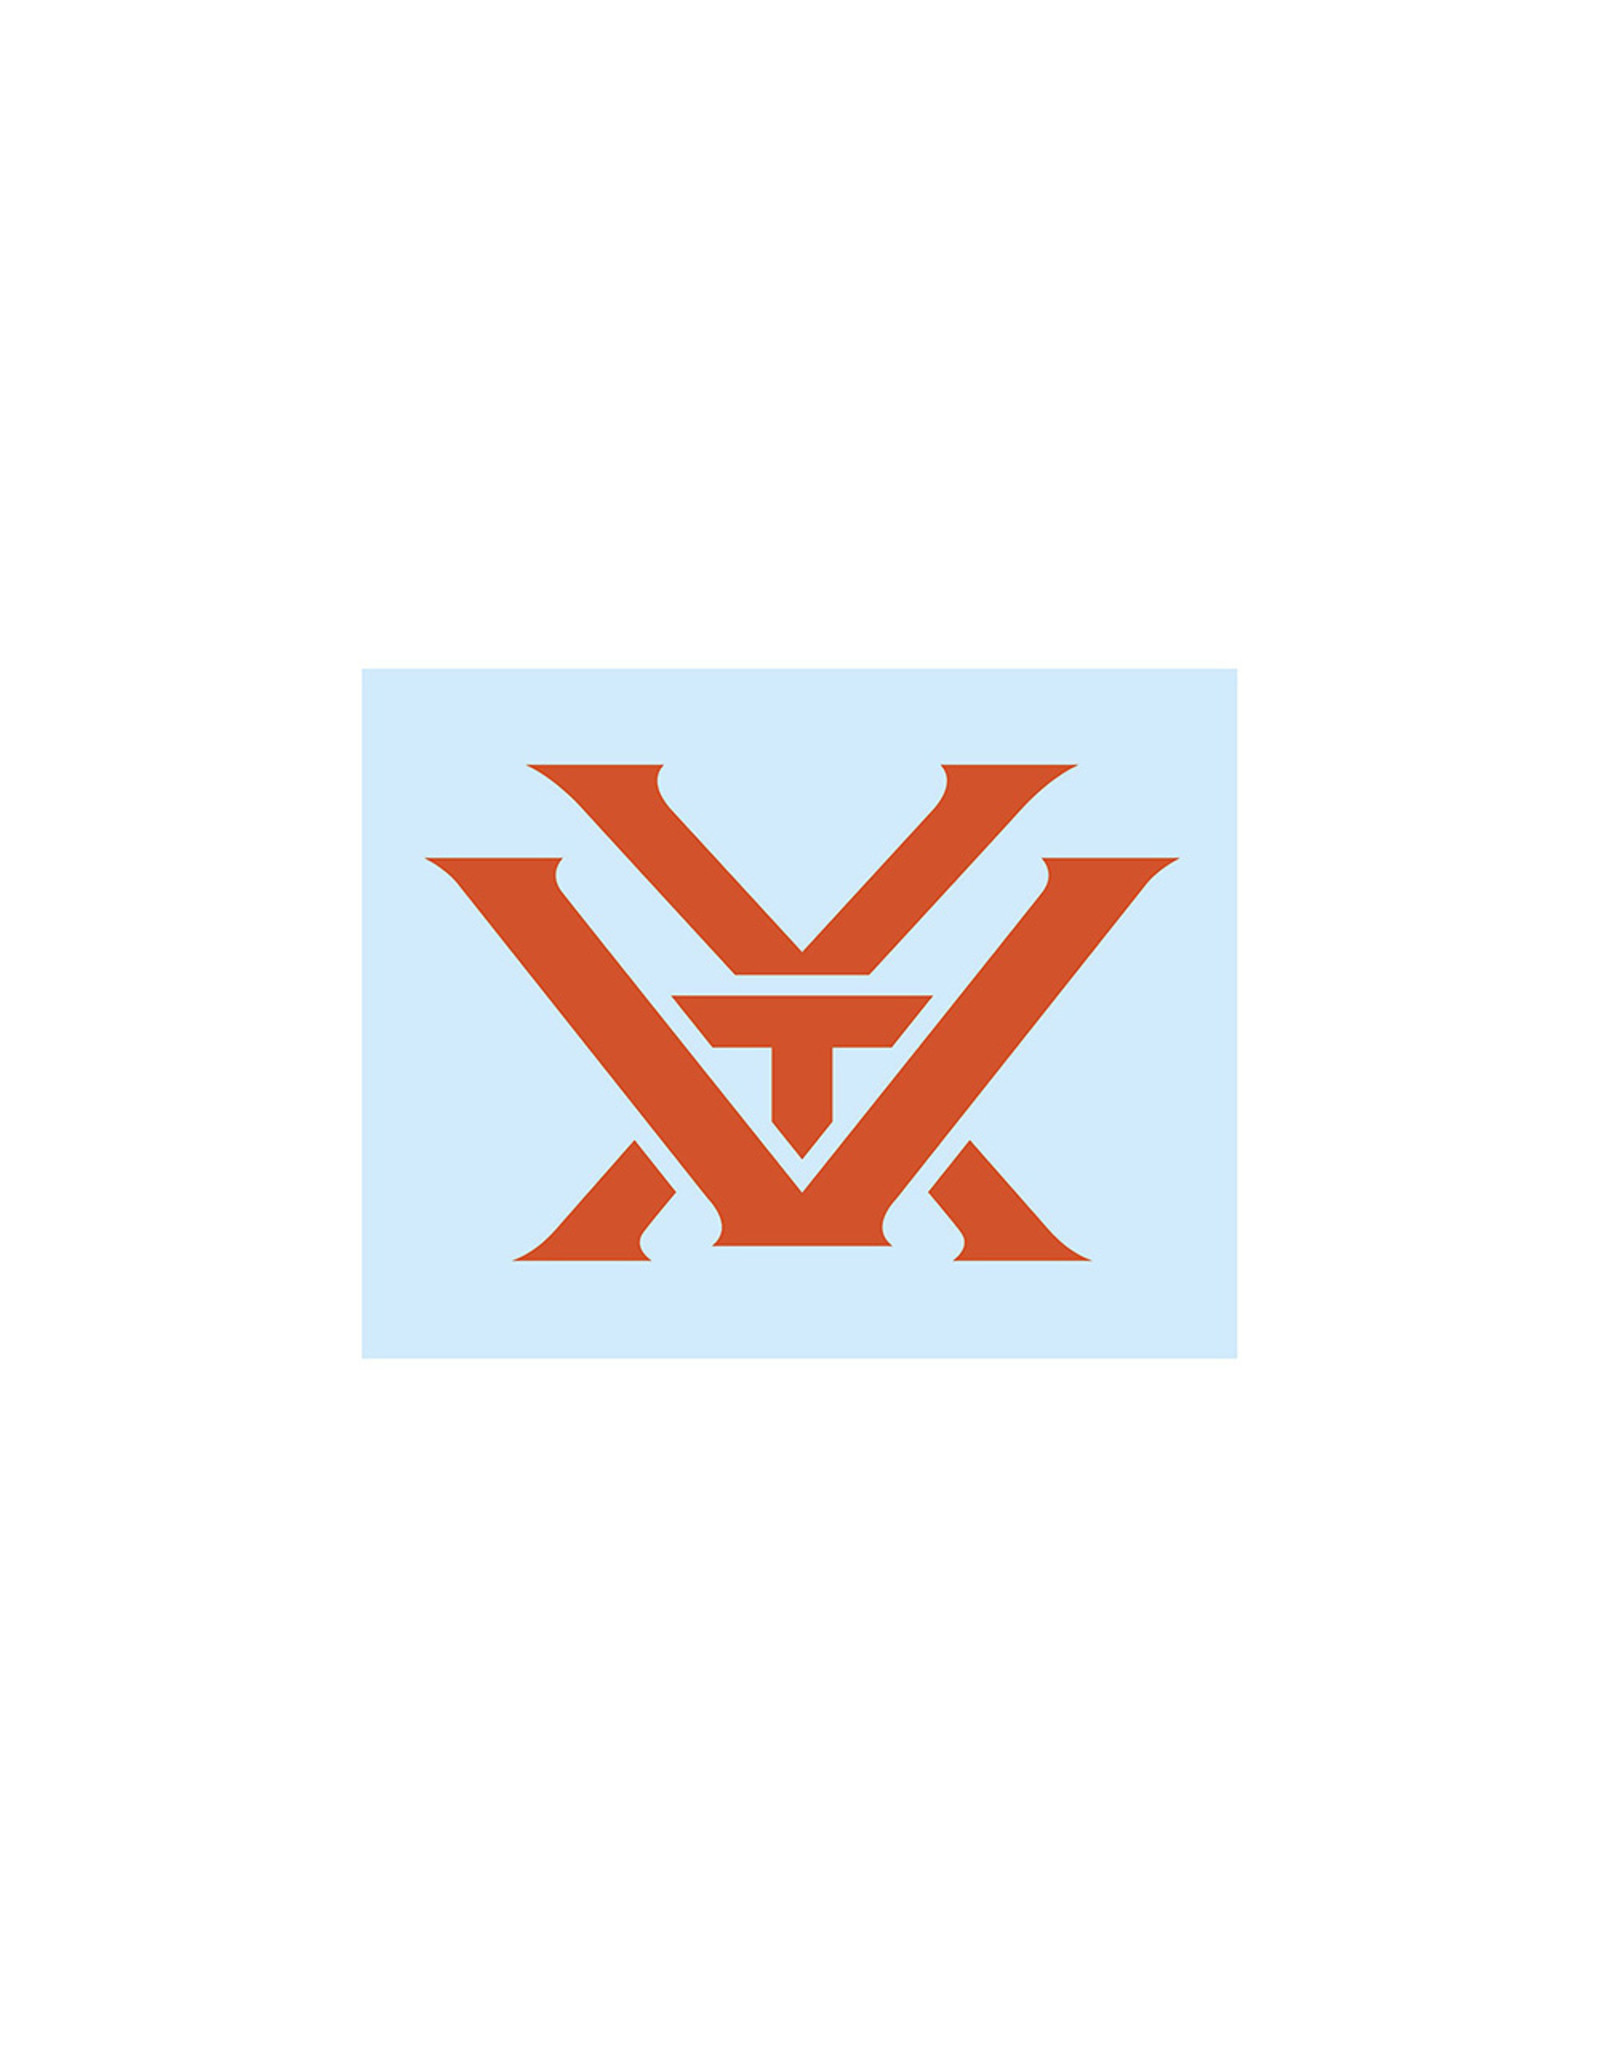 Vortex Vortex Small Decal Orange 2"x2"